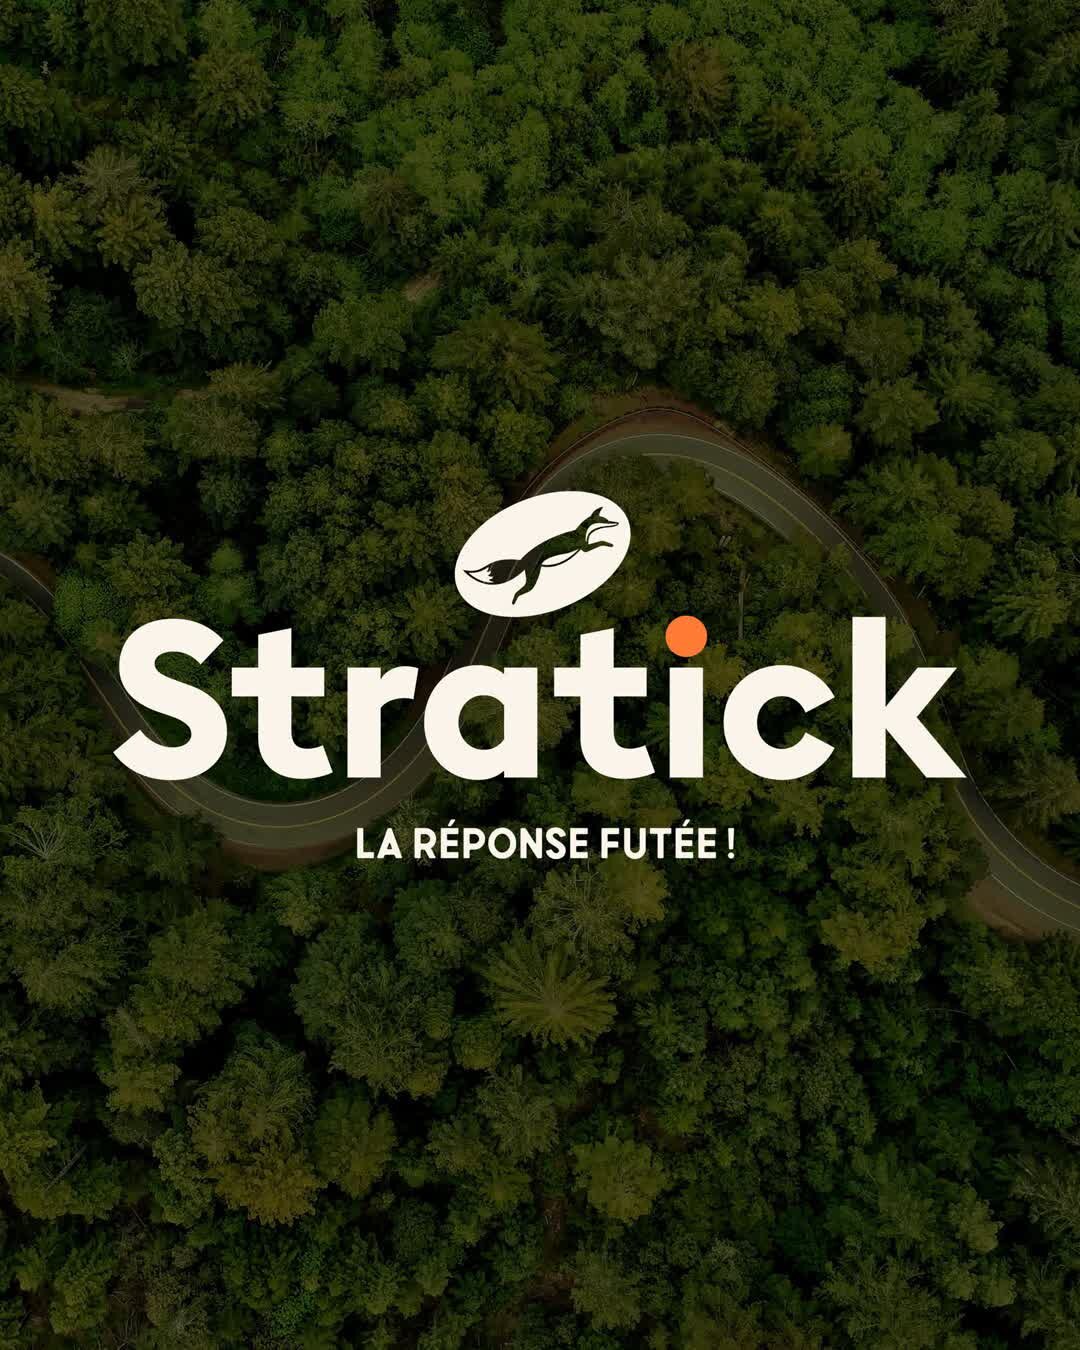 Logo, univers de marque, naming et site web pour @stratick.ch 🦊

🔎 Carmen est une jeune entrepreneure qui a d&eacute;cid&eacute; d&rsquo;ouvrir sa propre entreprise en 2021: Stratick. Elle se concentre sur les ind&eacute;pendants, en rendant les st